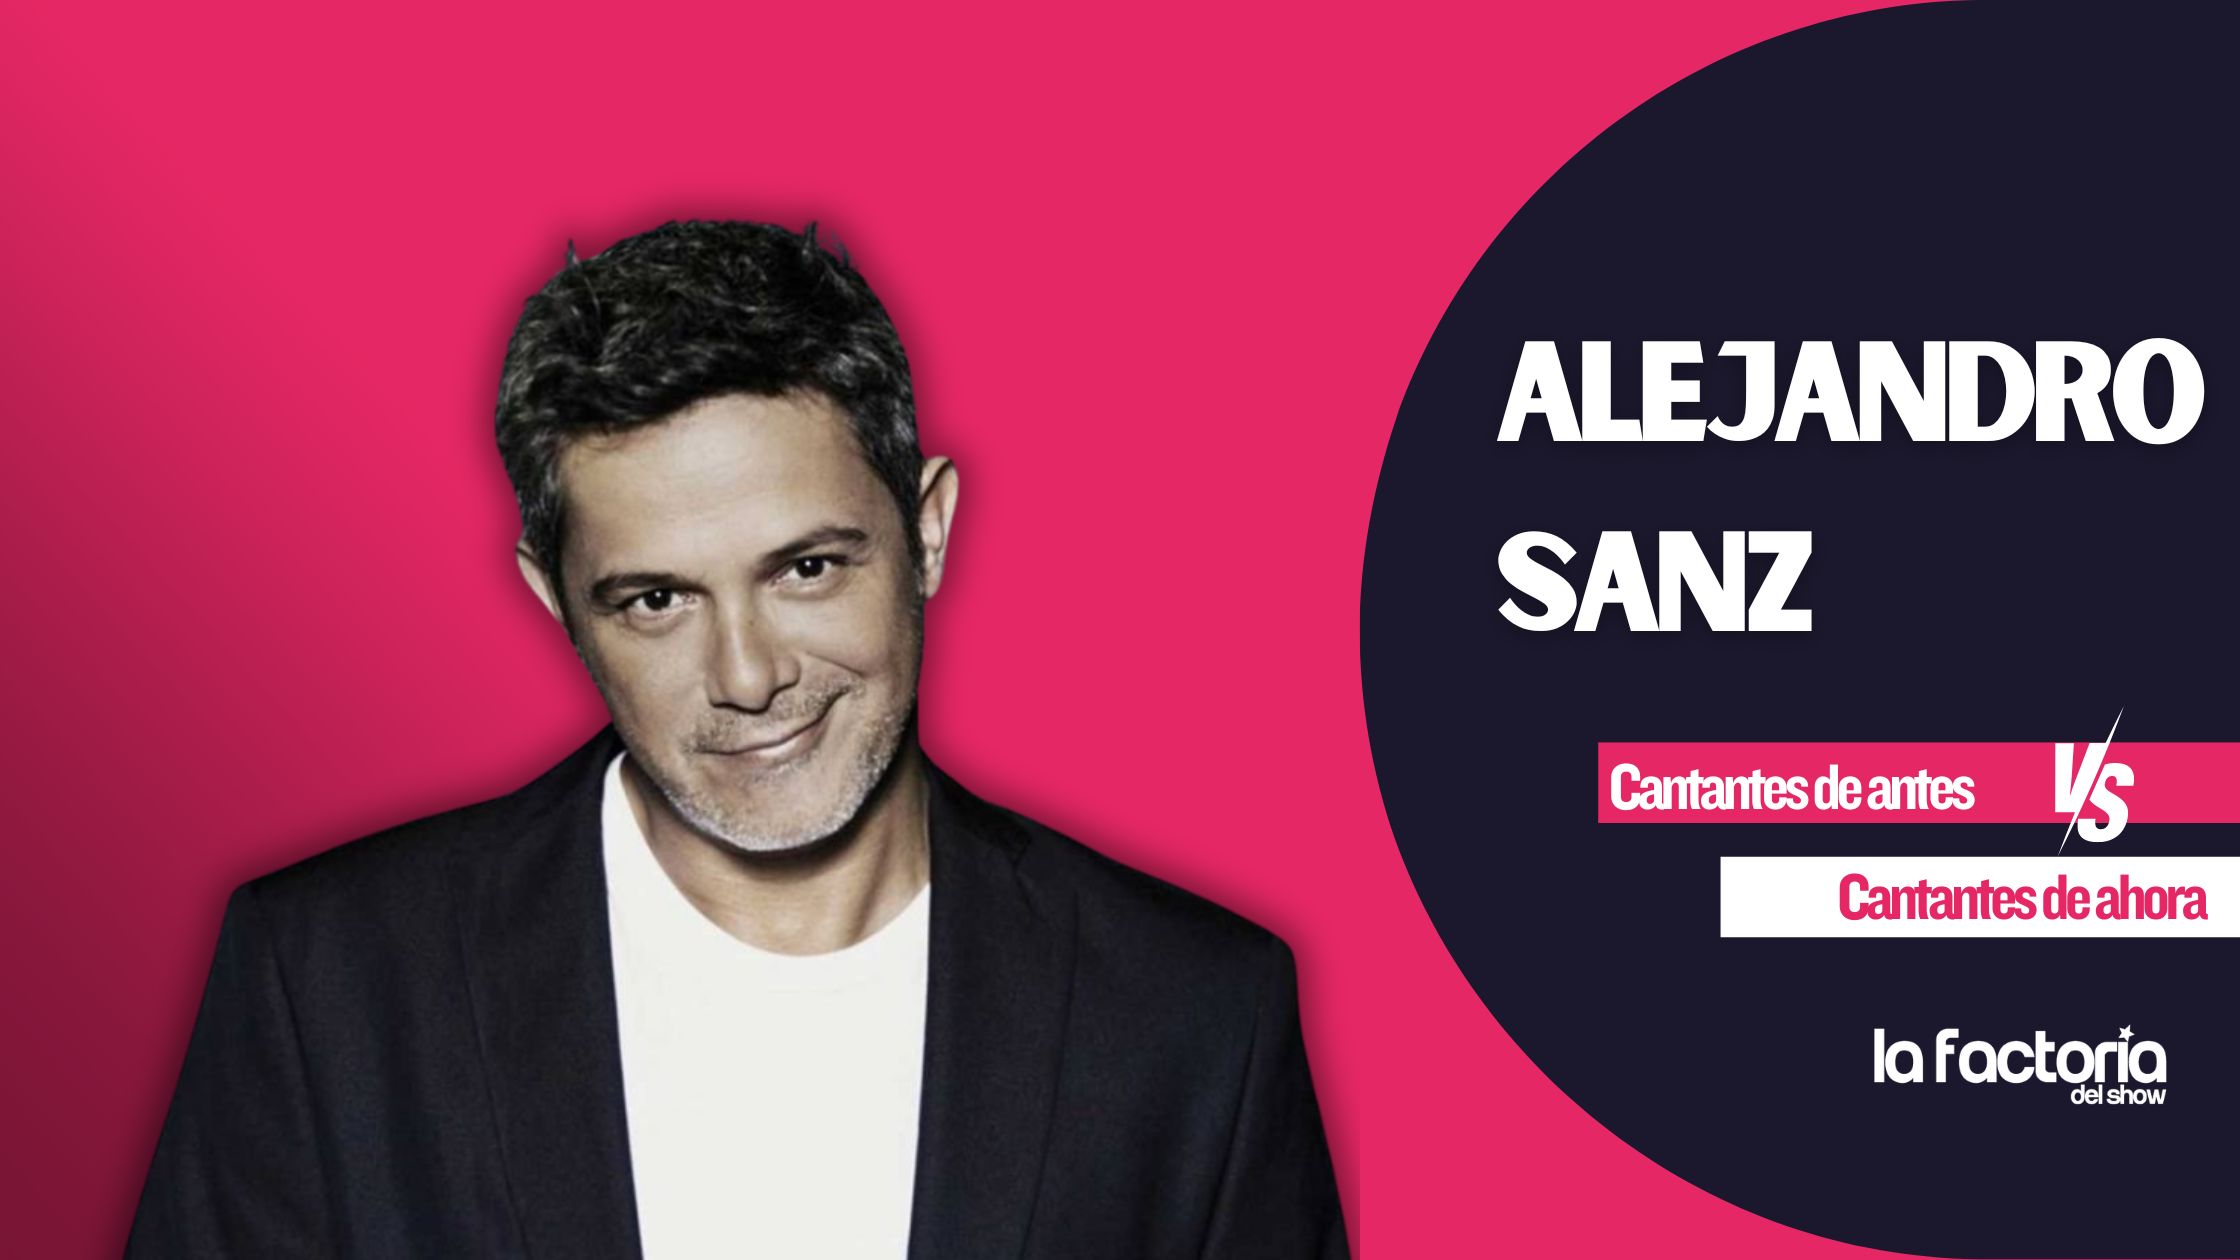 Alejandro Sanz es uno de los músicos españoles más importantes del panorama actual.